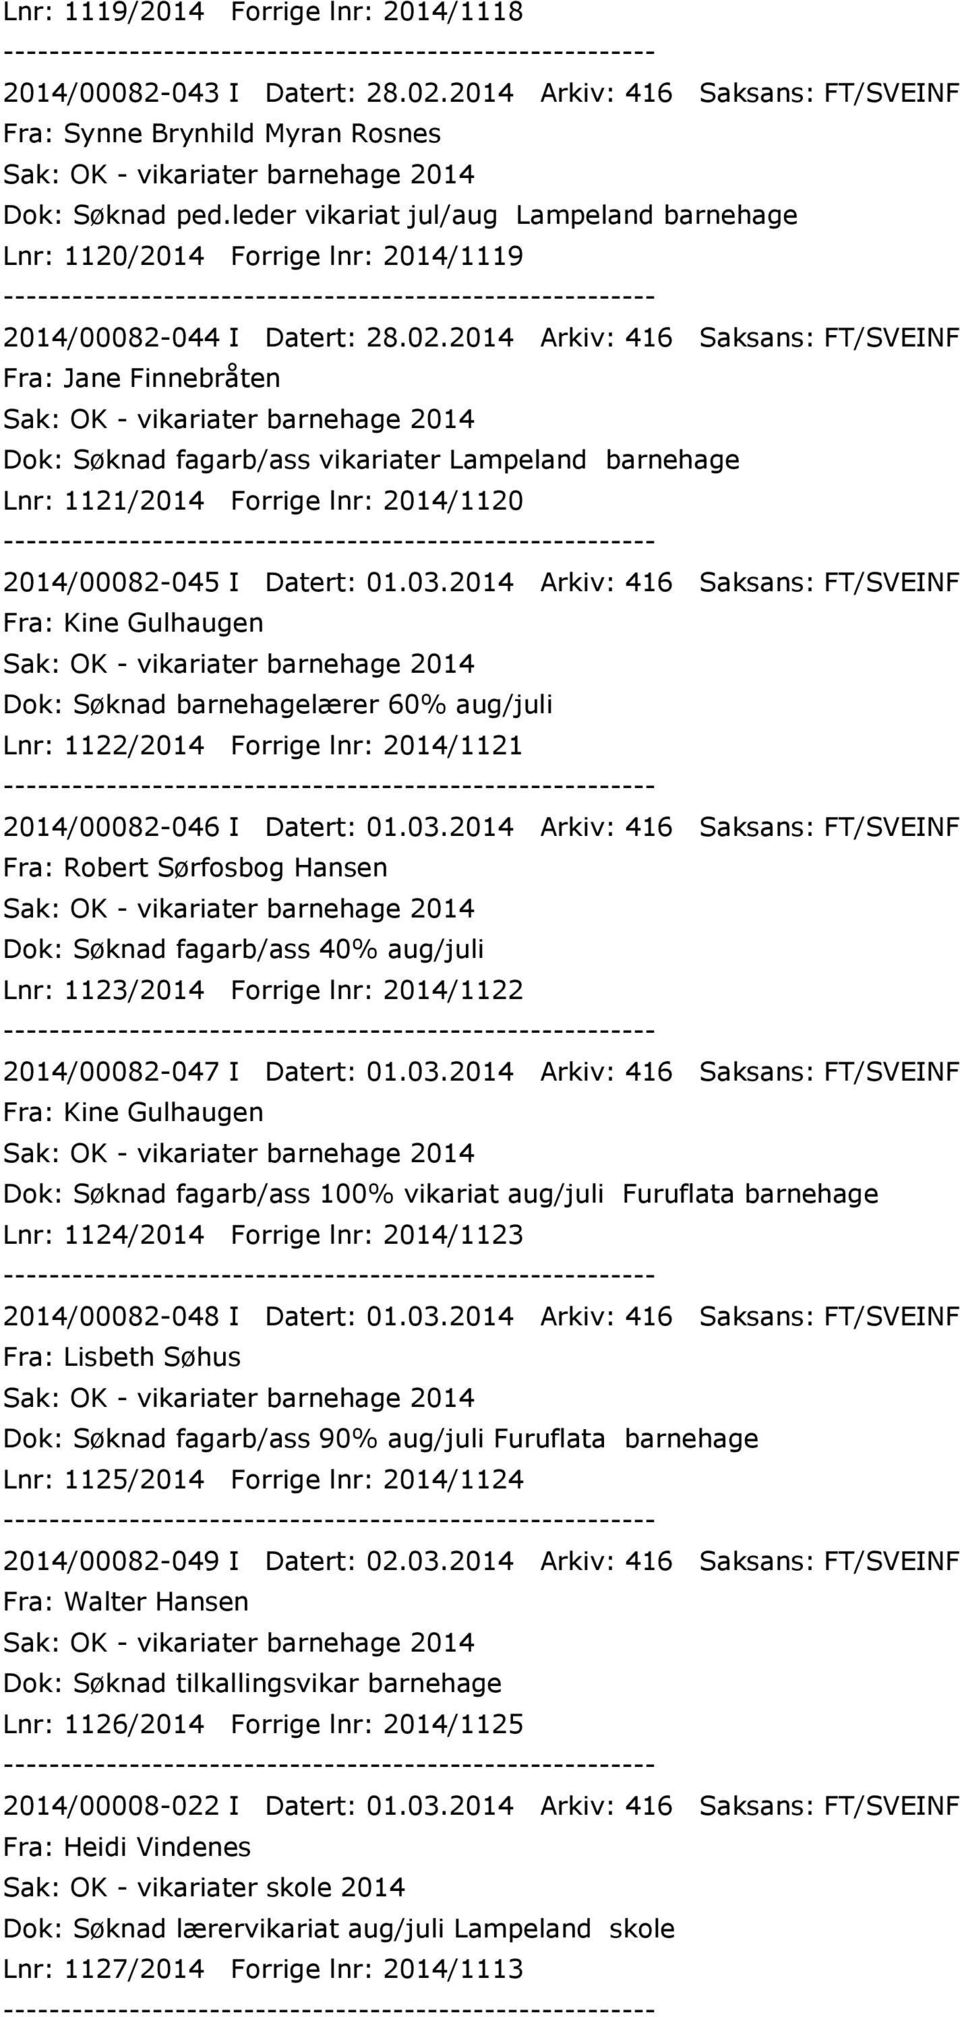 2014 Arkiv: 416 Saksans: FT/SVEINF Fra: Jane Finnebråten Dok: Søknad fagarb/ass vikariater Lampeland barnehage Lnr: 1121/2014 Forrige lnr: 2014/1120 2014/00082-045 I Datert: 01.03.